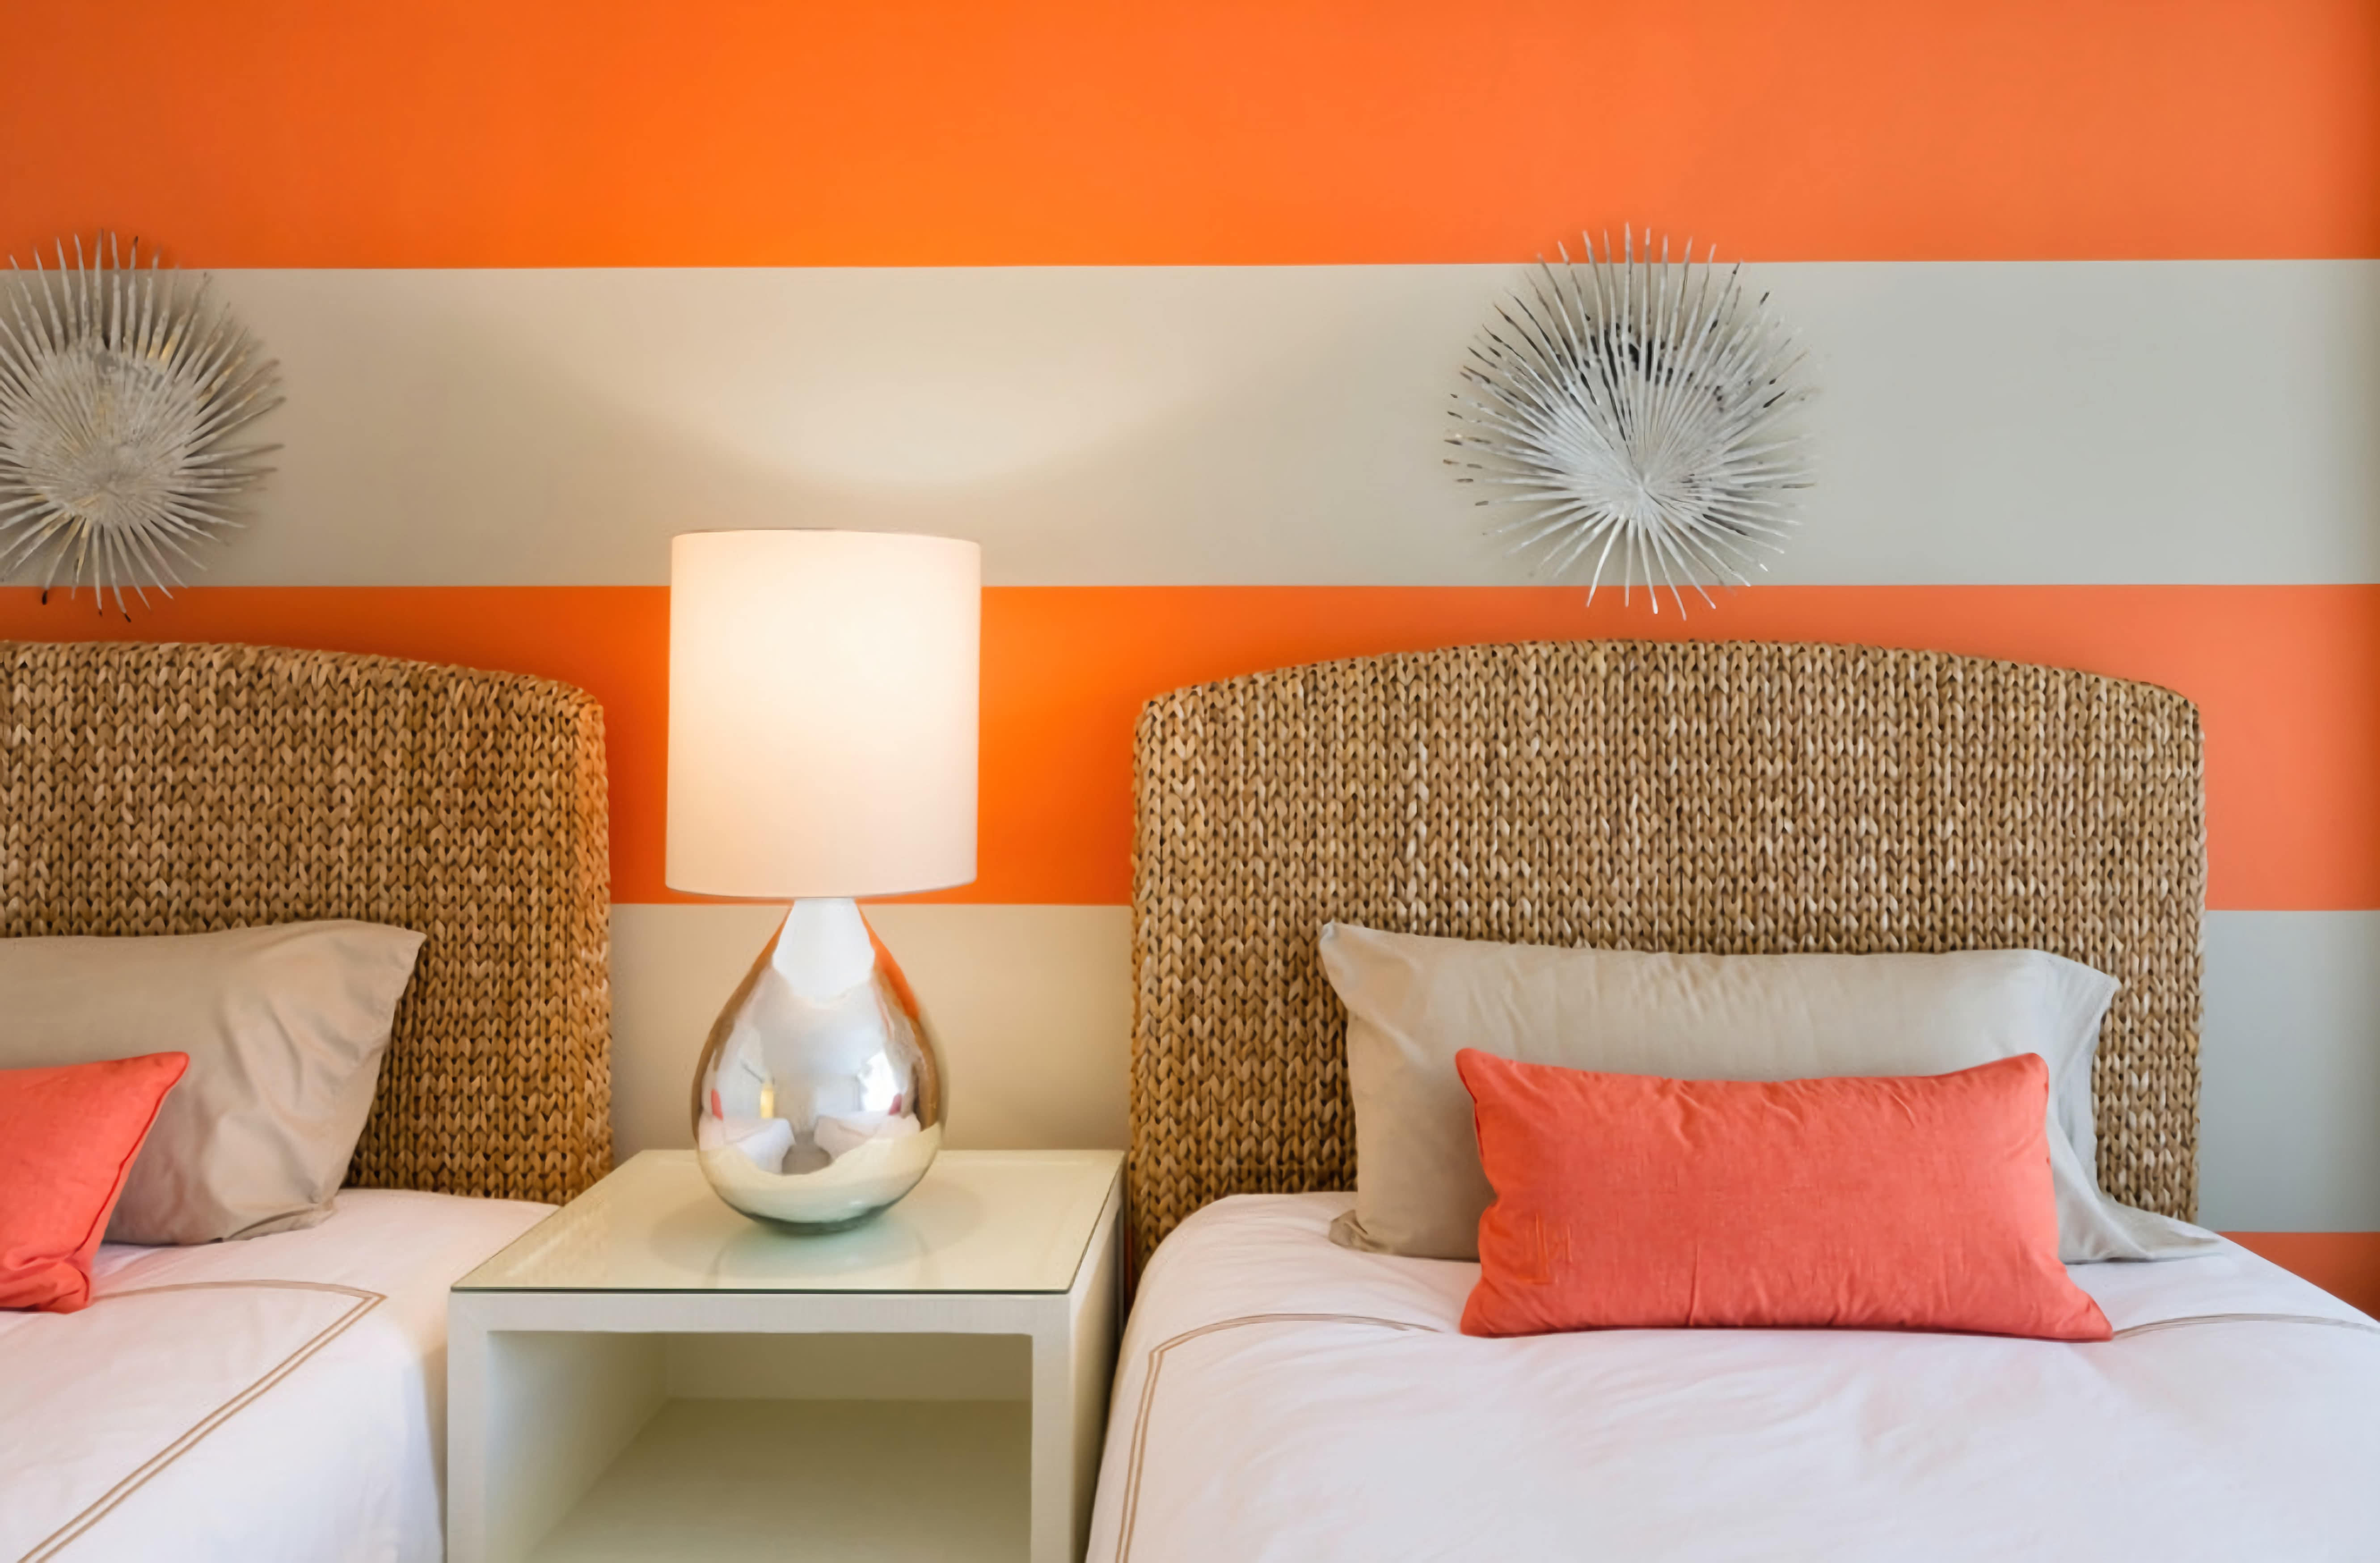 Спальня. Оранжево-белые стены, подушки